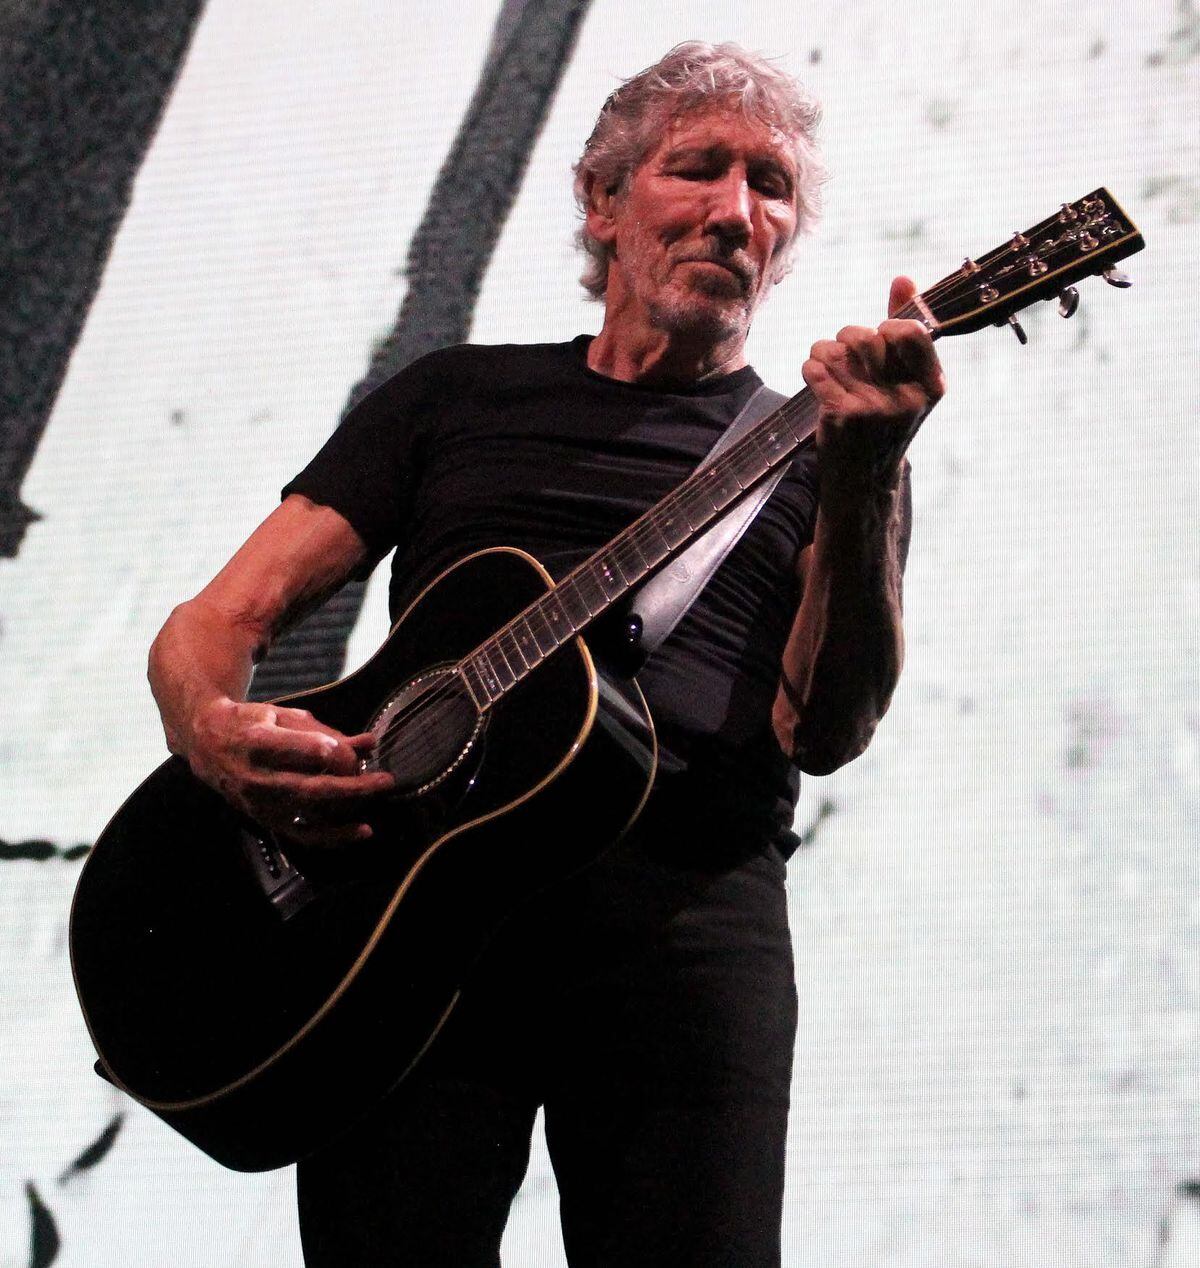 Roger Waters at Birmingham Arena